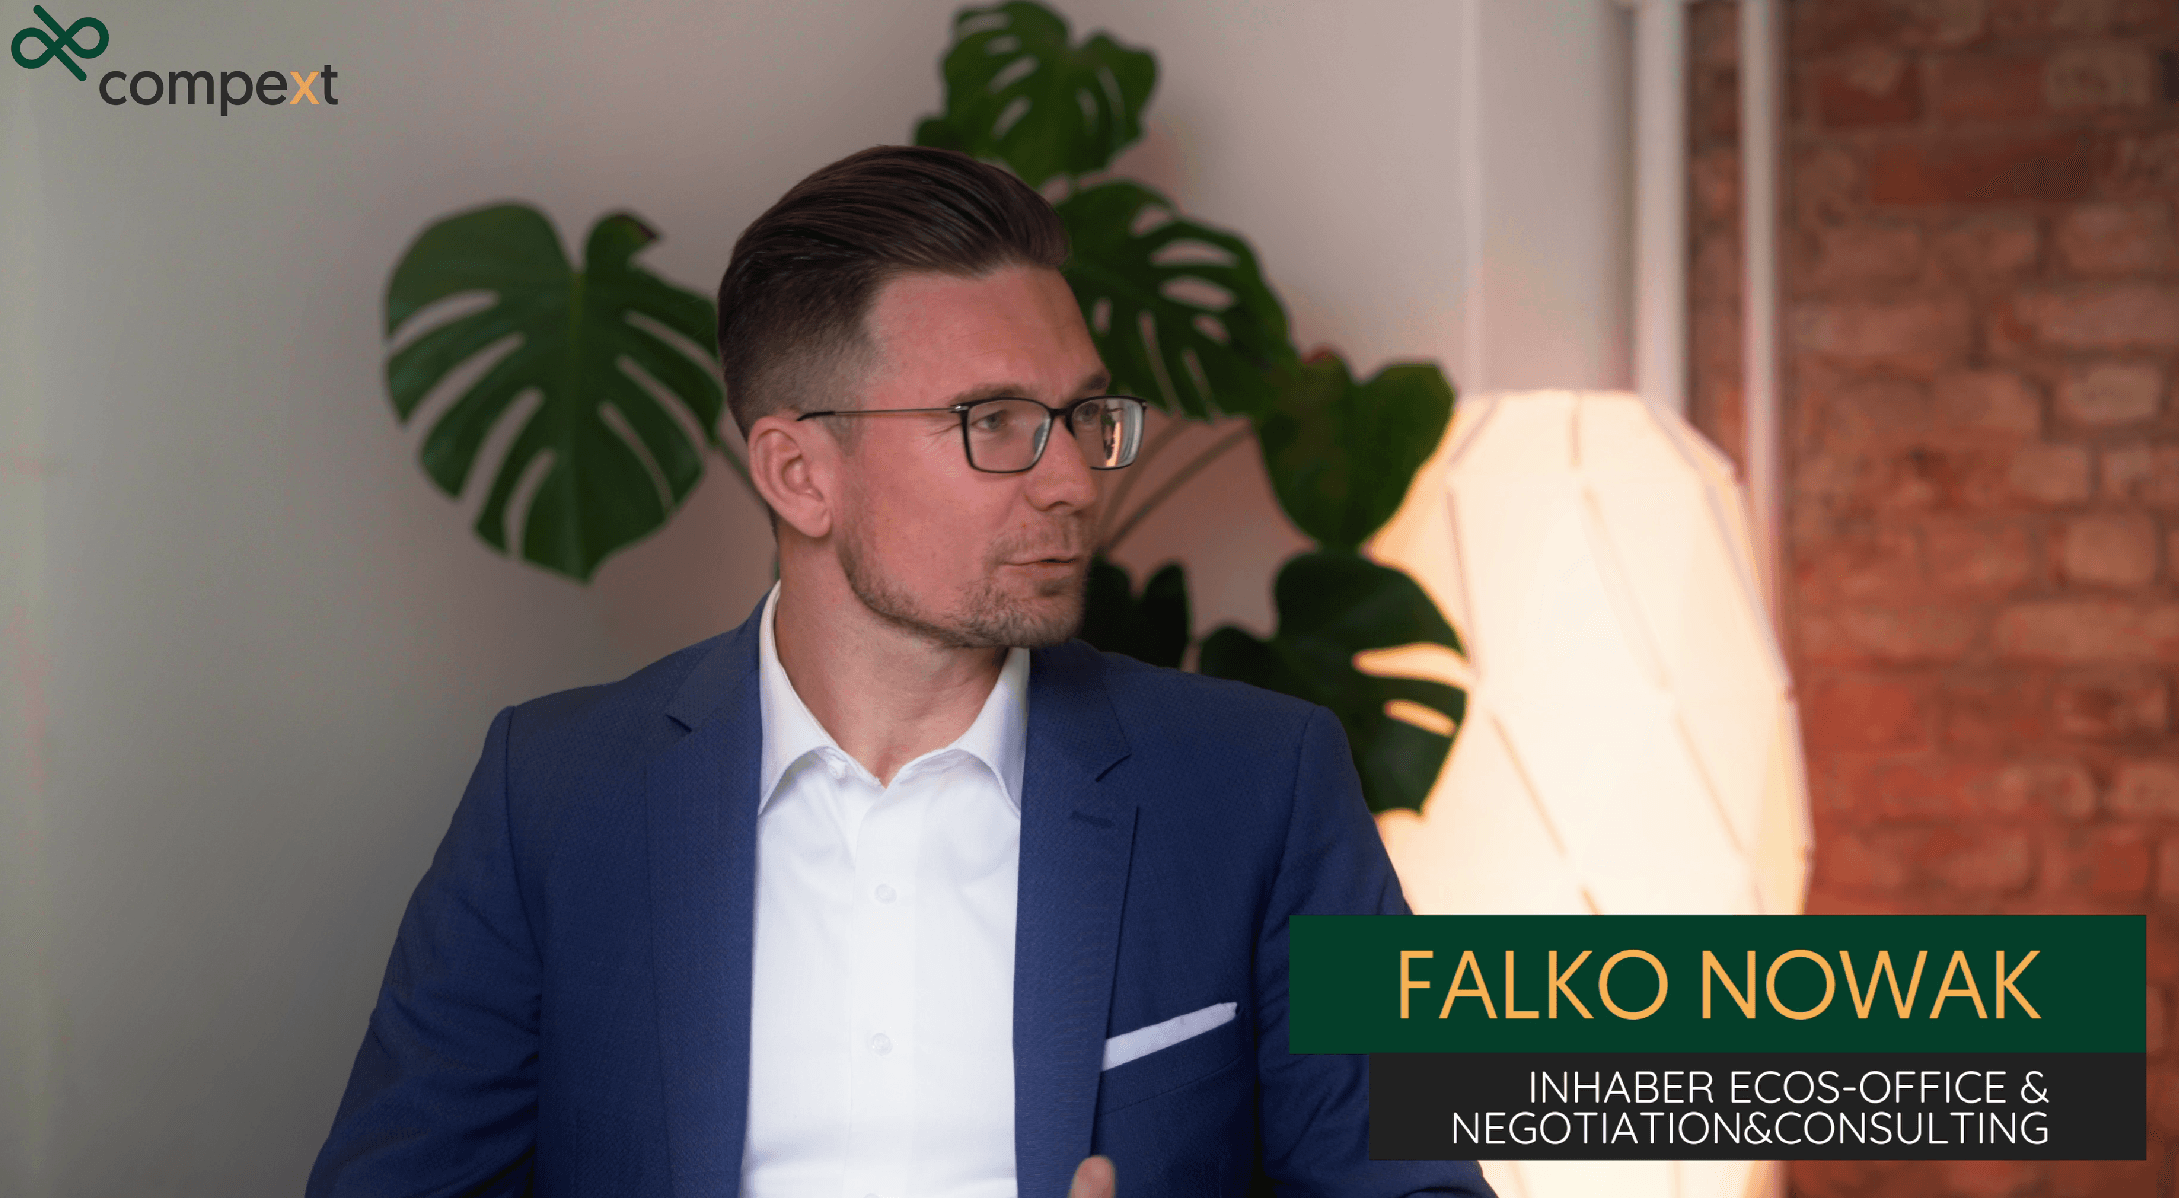 Experteninterview mit Falko Nowak - ein Gründer/Käufer